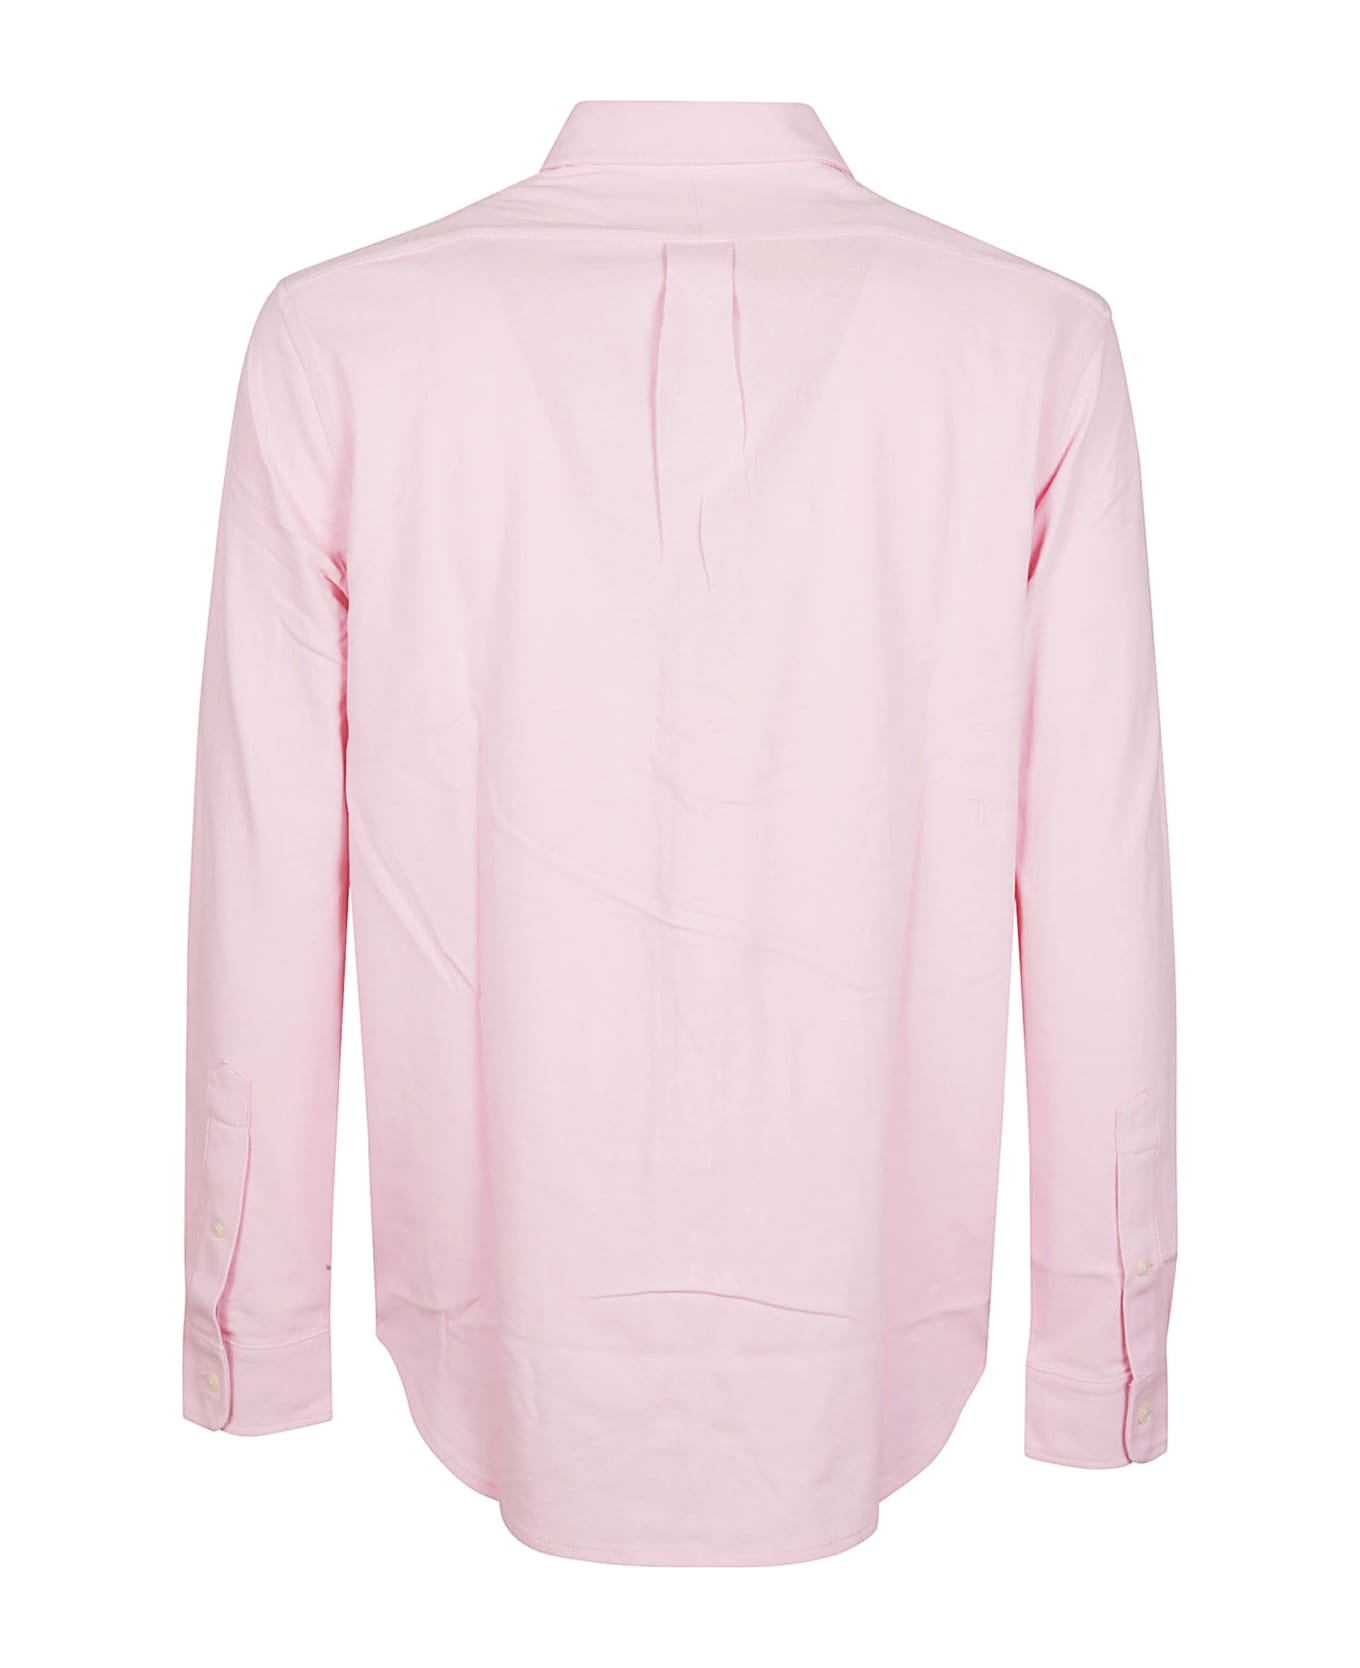 Polo Ralph Lauren Long Sleeve Shirt - Garden Pink